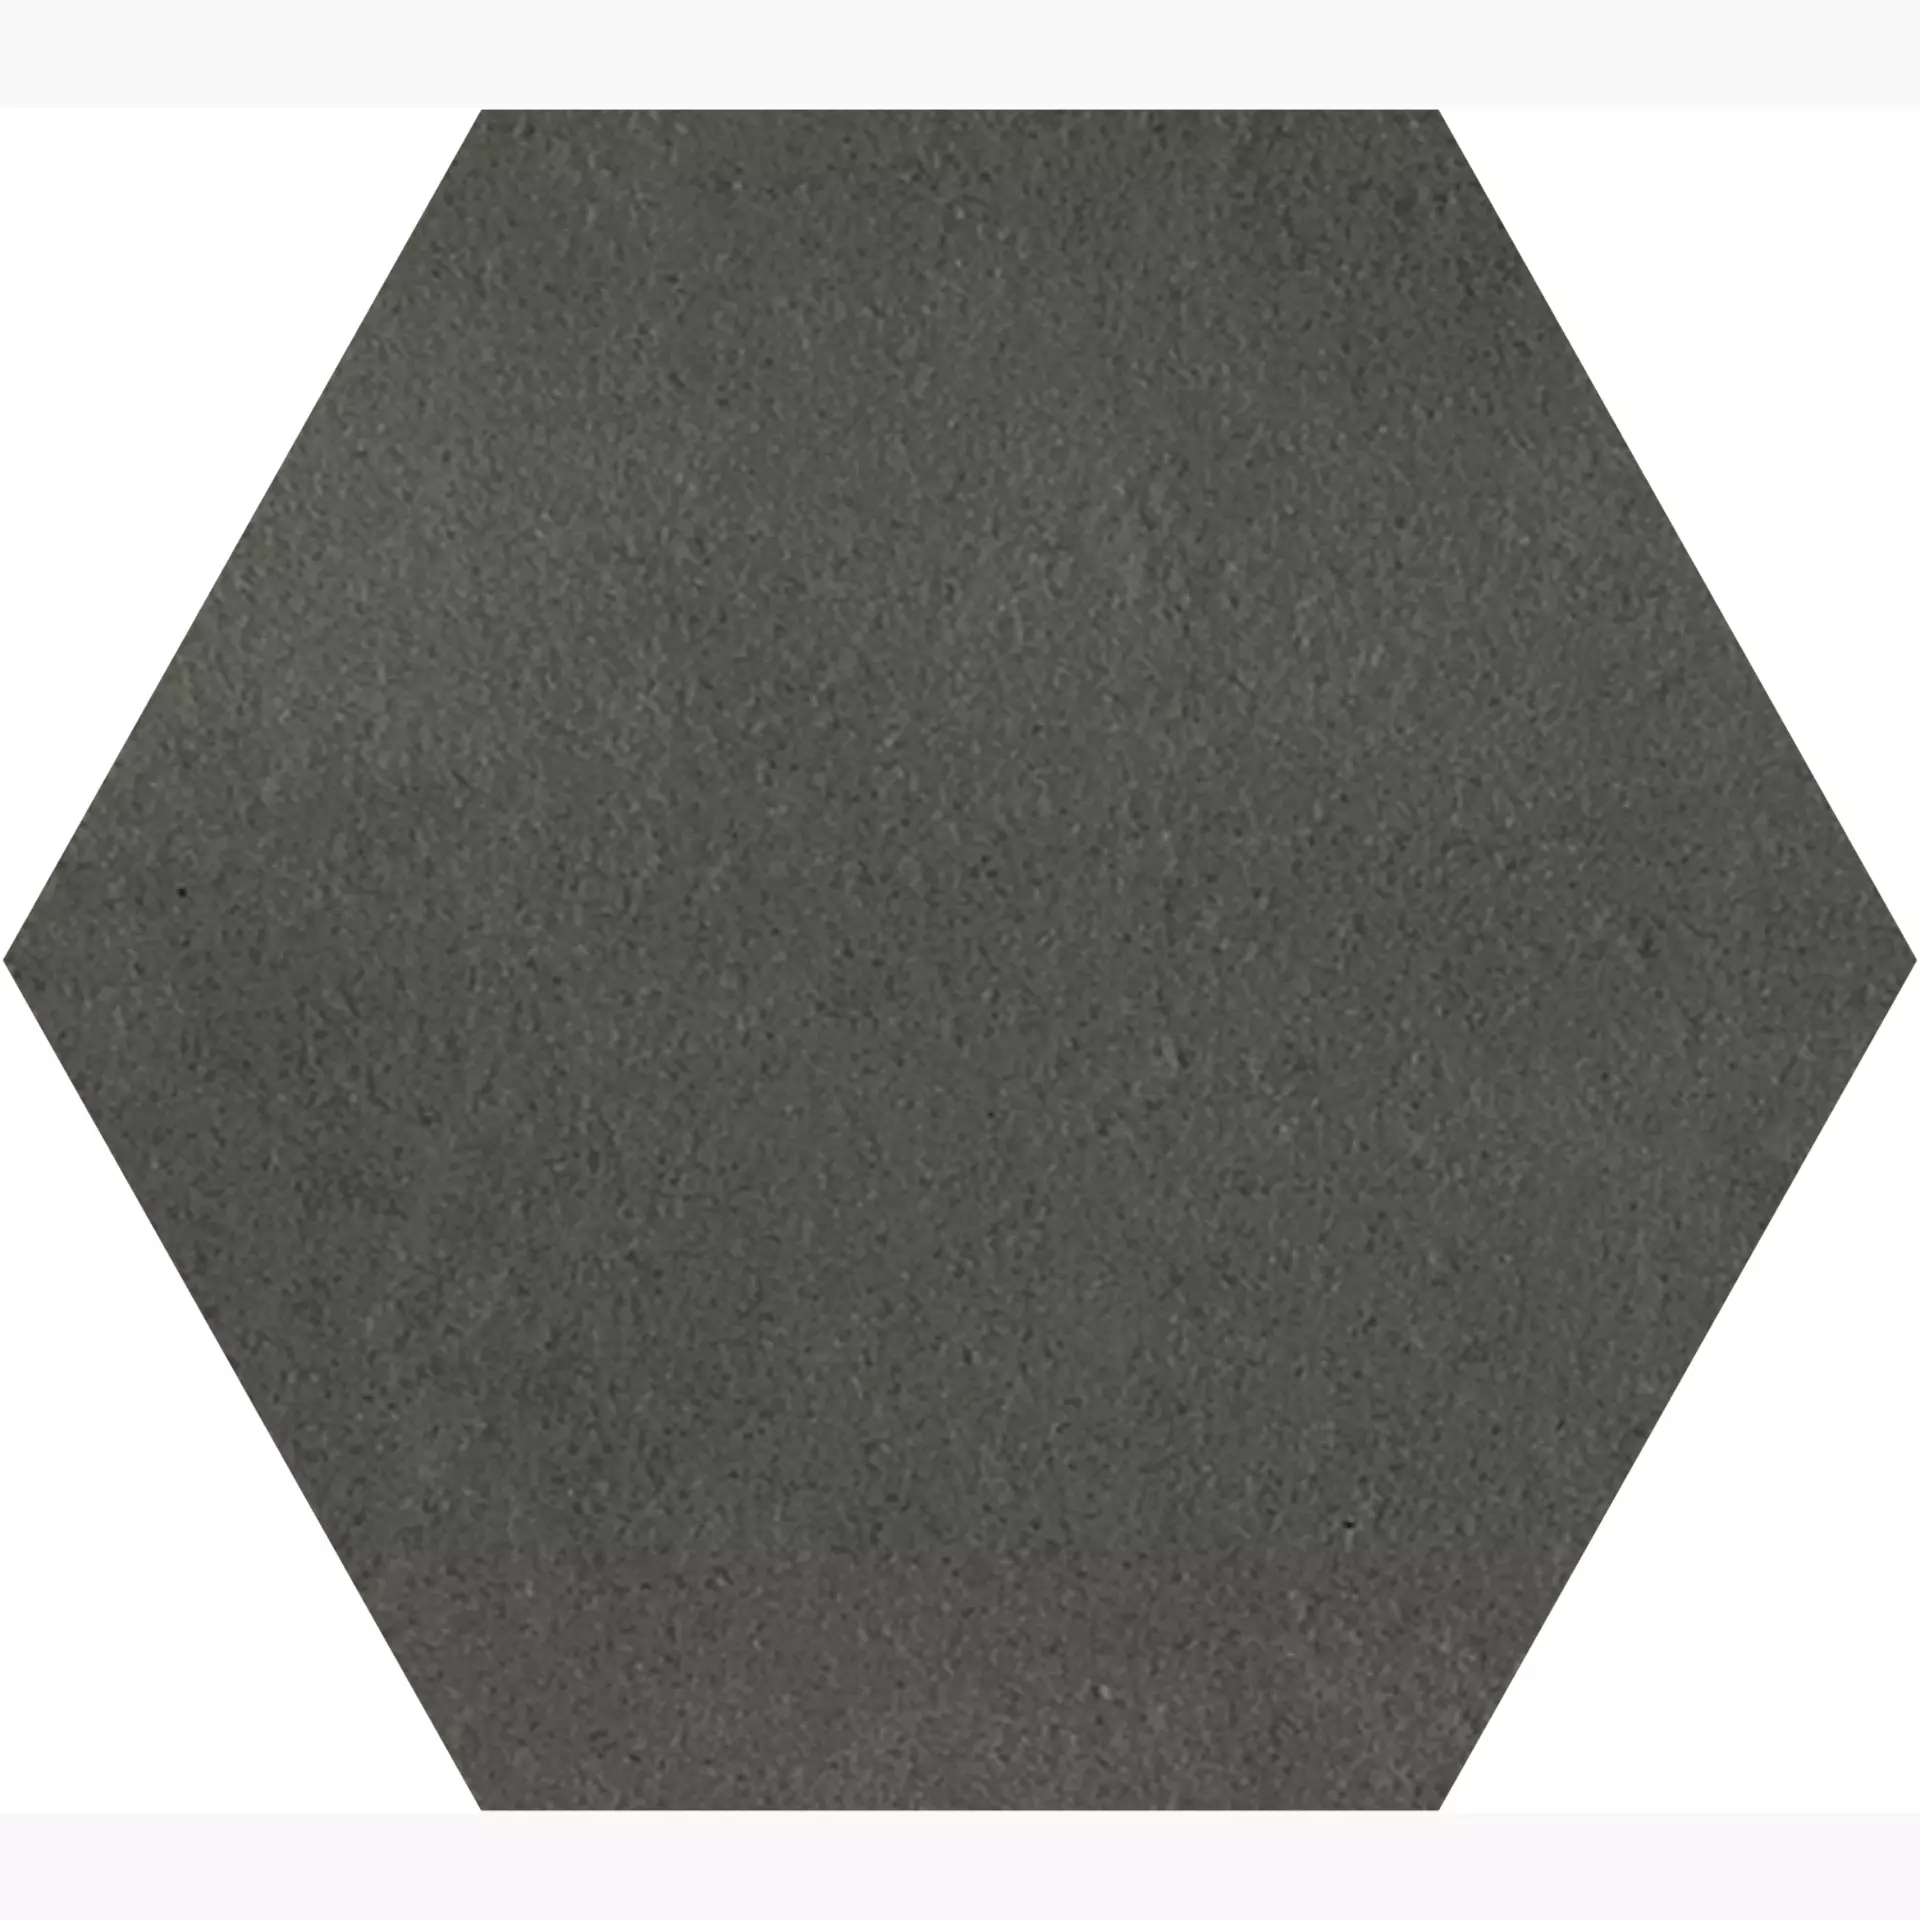 Gigacer Concrete Smoke Matt Smoke PO9ESASMOKE matt 16x18cm Small Hexagon 4,8mm